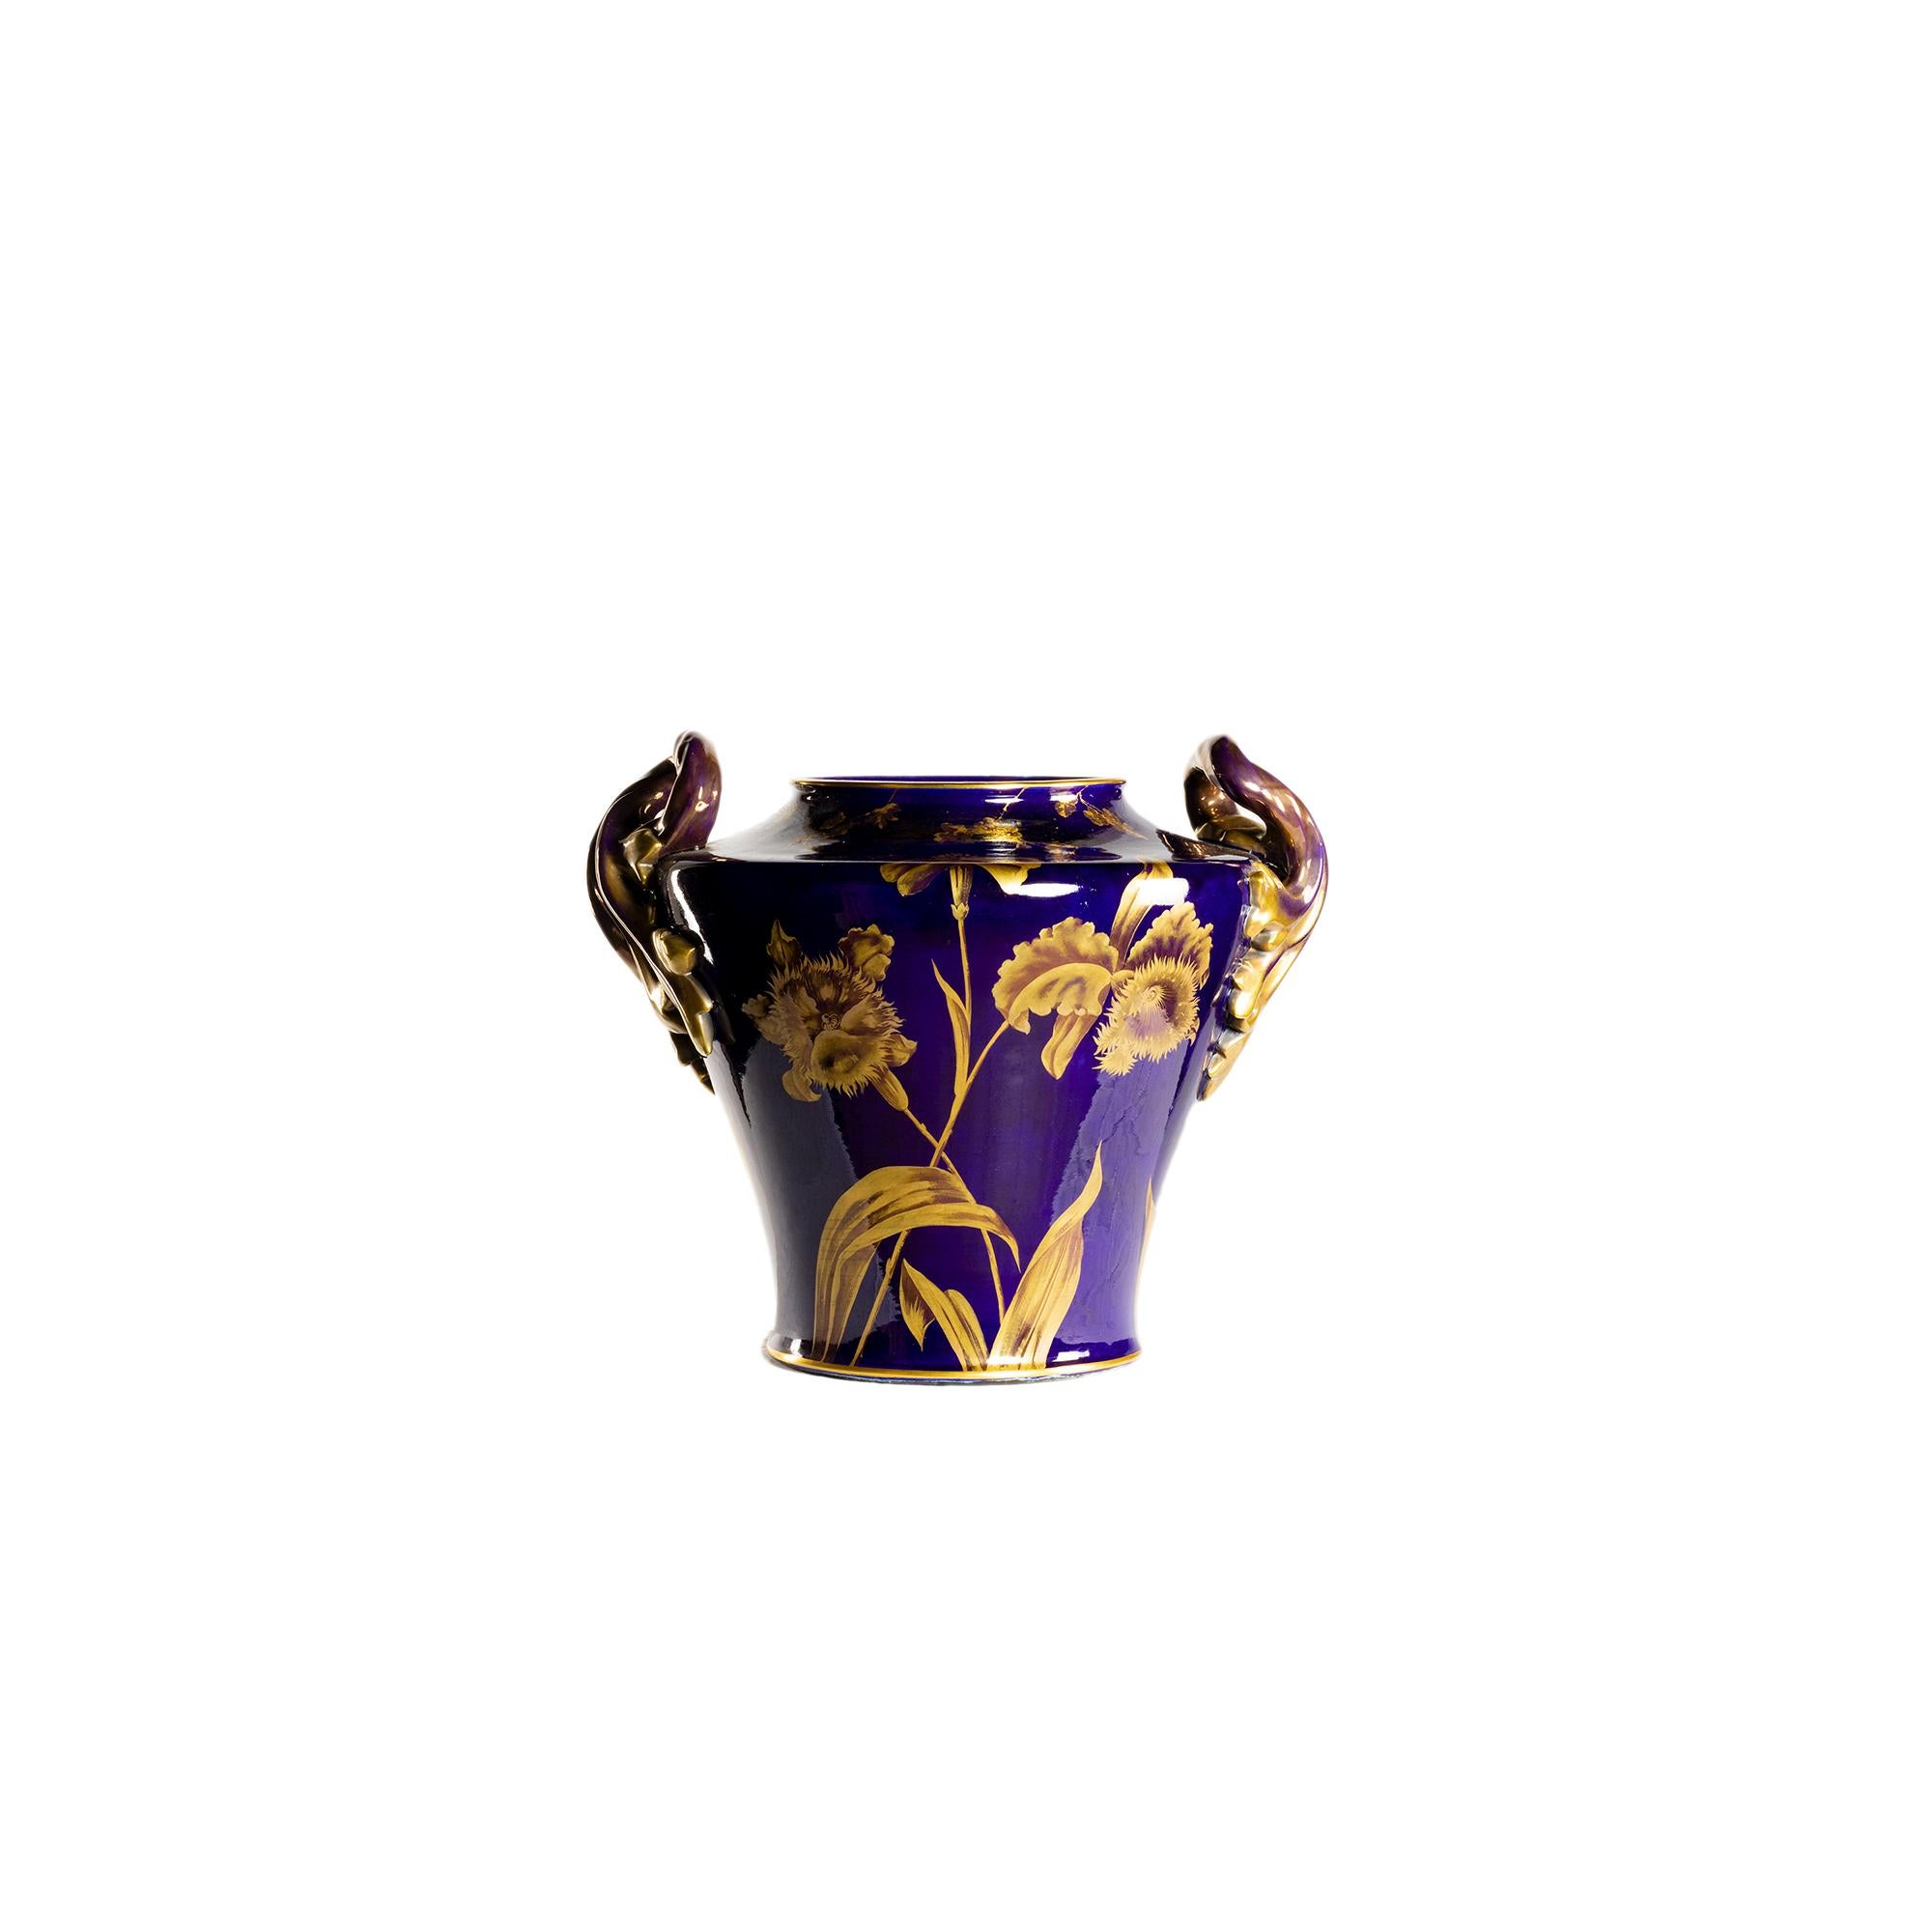 Magnifique grand vase en céramique à deux anses représentant la vigne vierge en fleur en dorure sur fond bleu de Tours.
Un modèle de Gustave Asch, sculpteur céramiste renommé qui a travaillé à Sainte Radegonde (Rodez, Aveyron).  
Ax (manufacture de